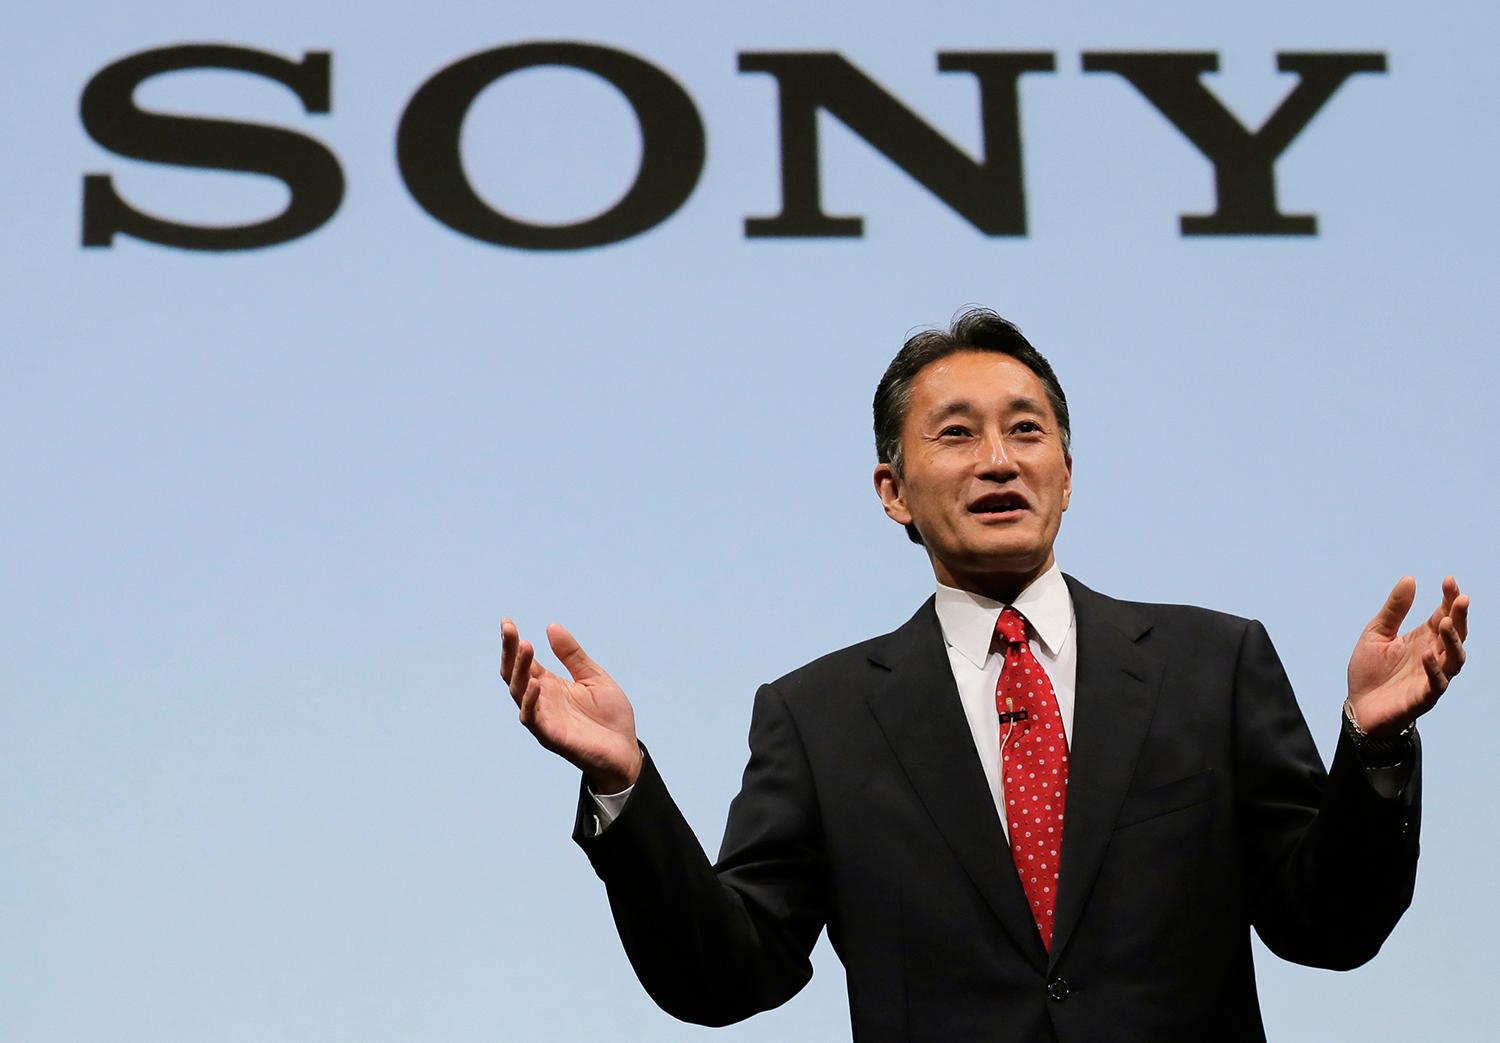 PS4 é referência para toda a Sony, diz CEO da empresa